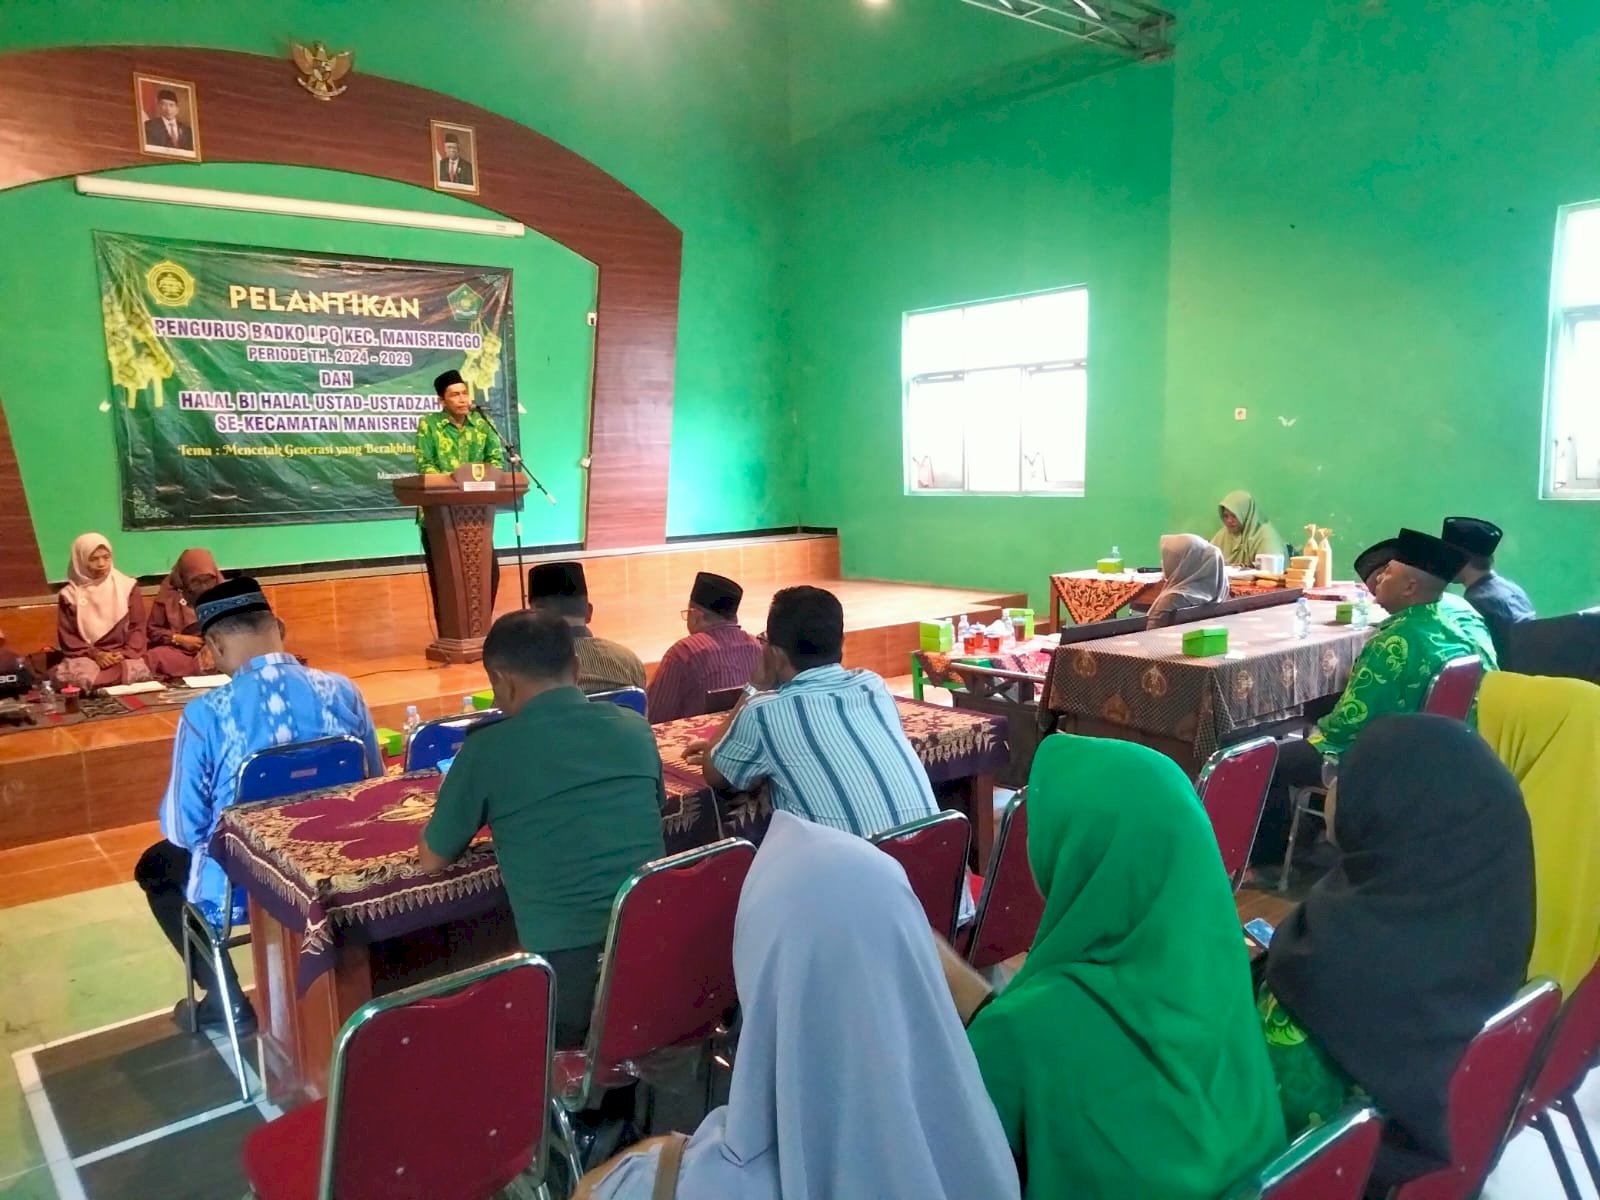 Pelaksanaan Kegiatan Halal Bihalal Ustadz/ah TPQ dan Pelantikan Pengurus Badan Koordinasi Lembaga Pendidikan Al-Quran (BADKO LPQ) Kecamatan Manisrenggo